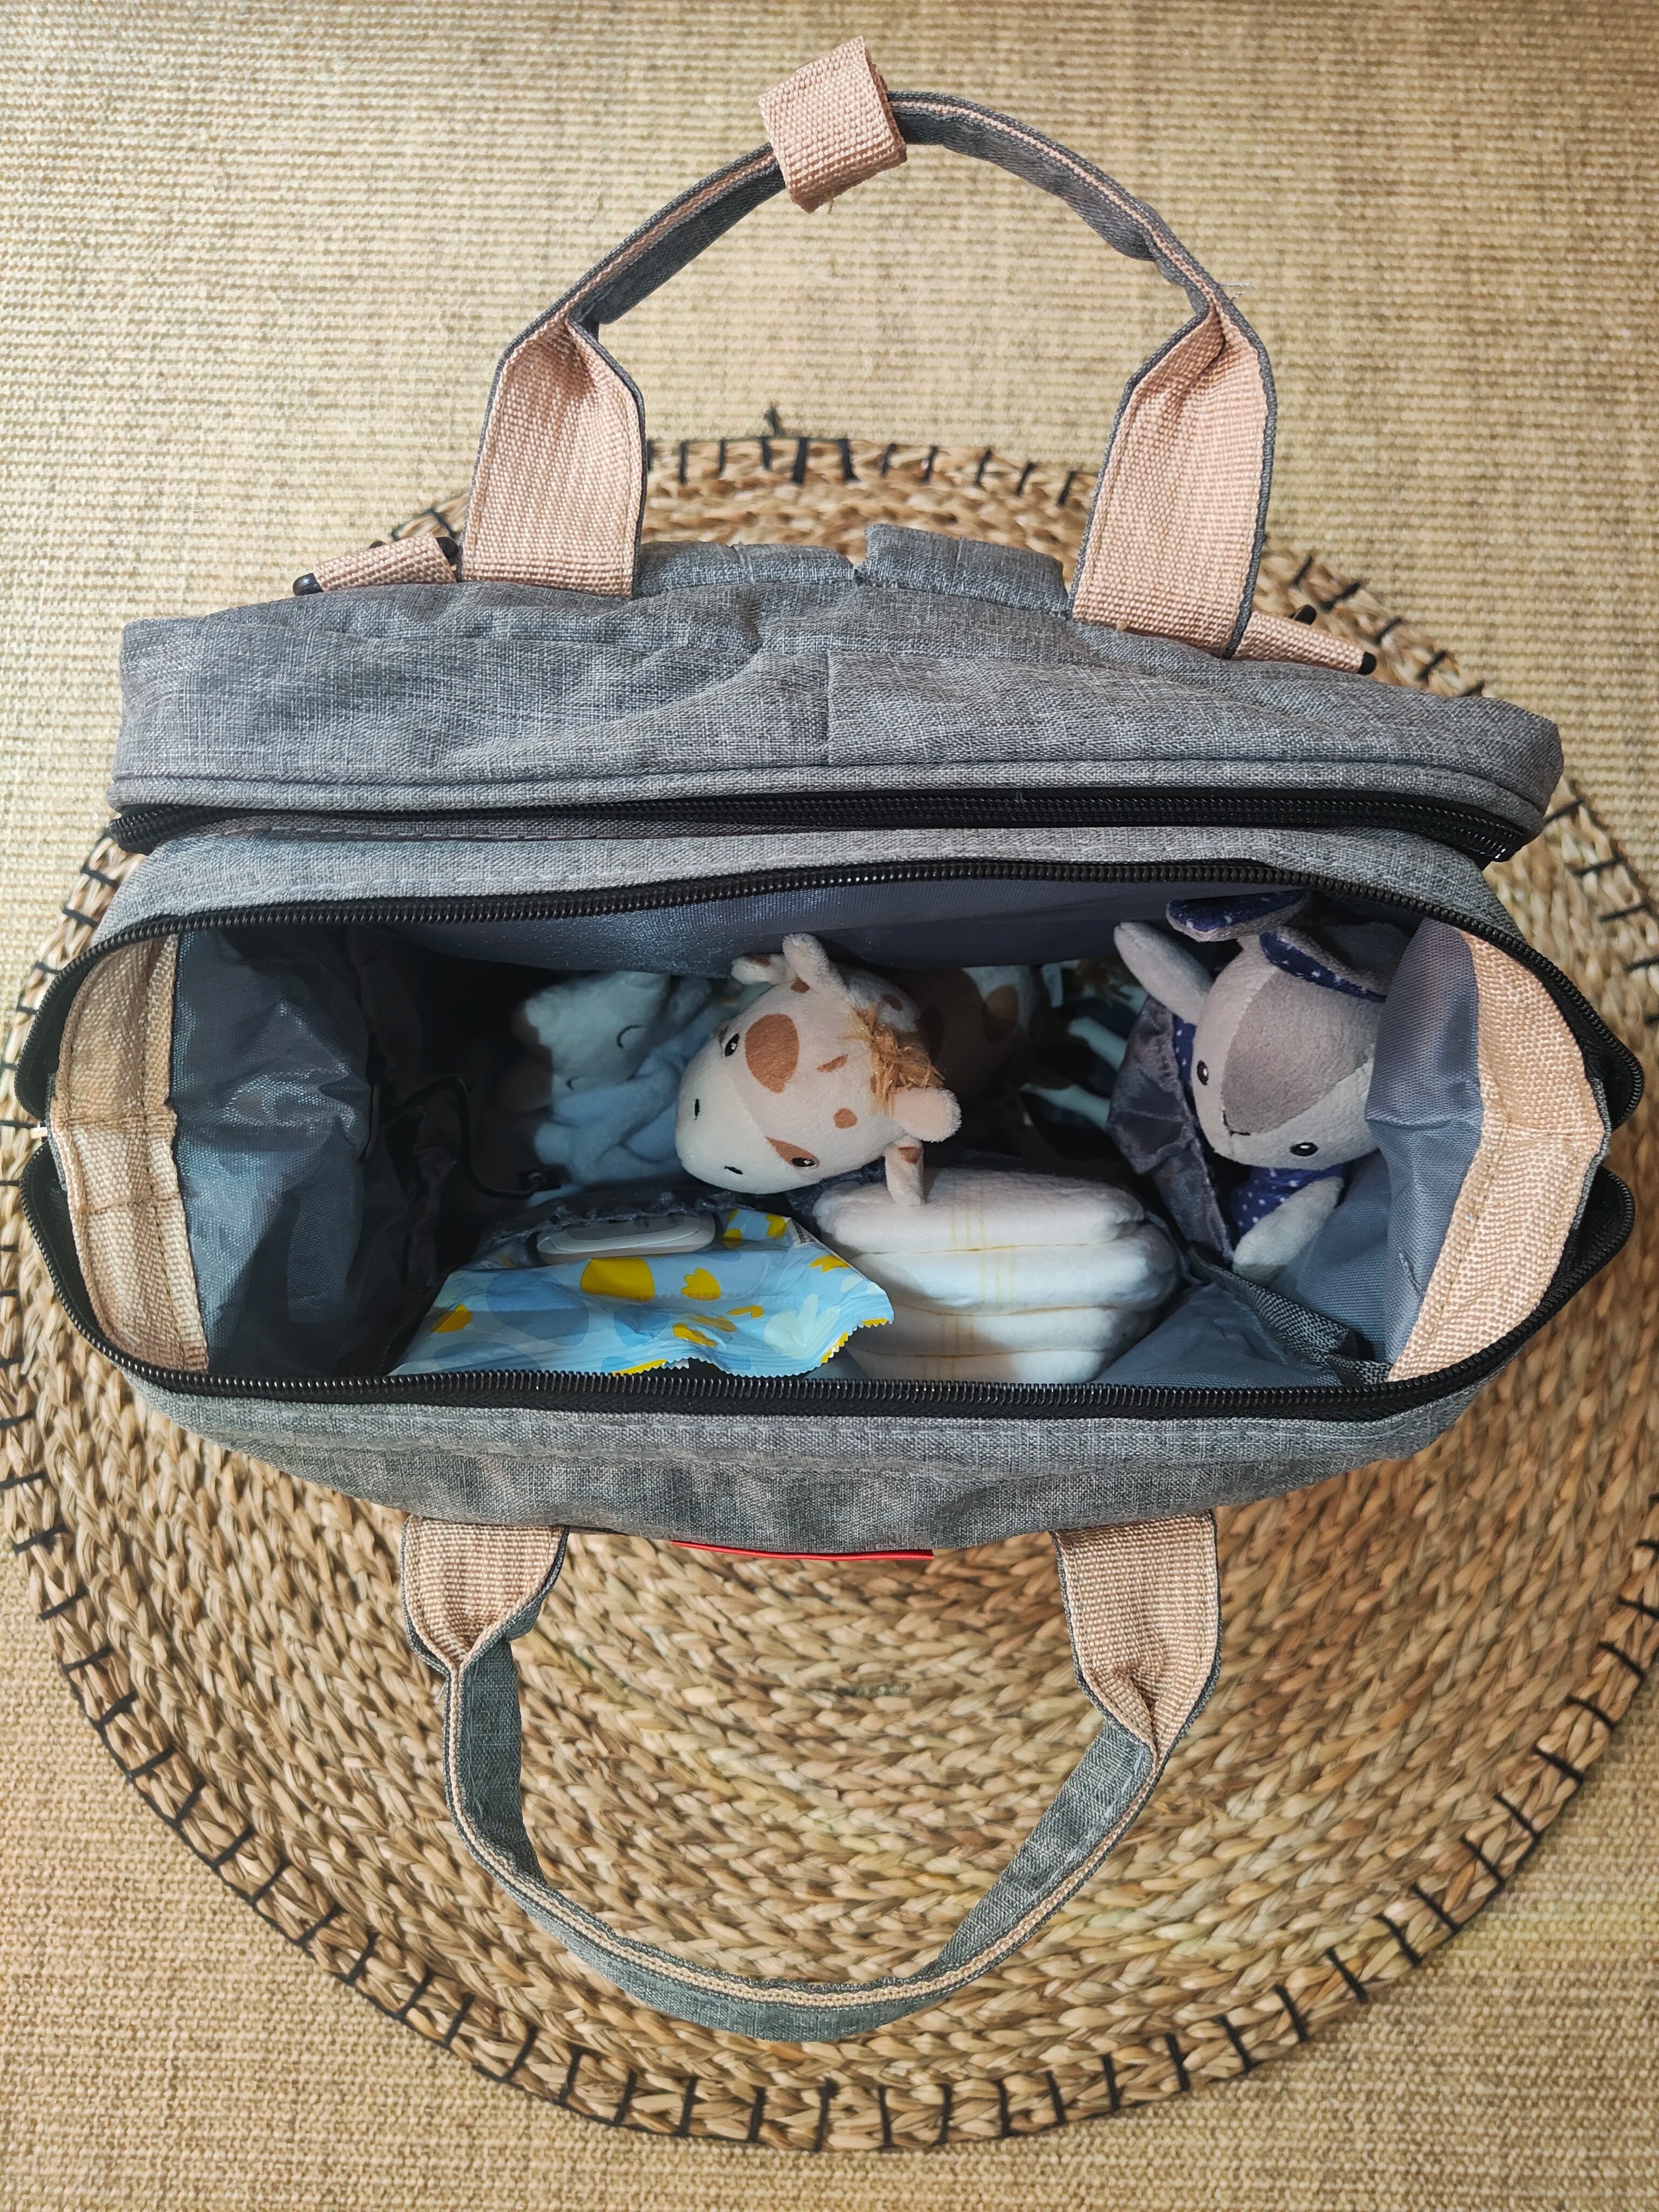 L'intérieur du sac à langer avec tout le nécessaire de bébé-lingettes-doudou-couches-changes